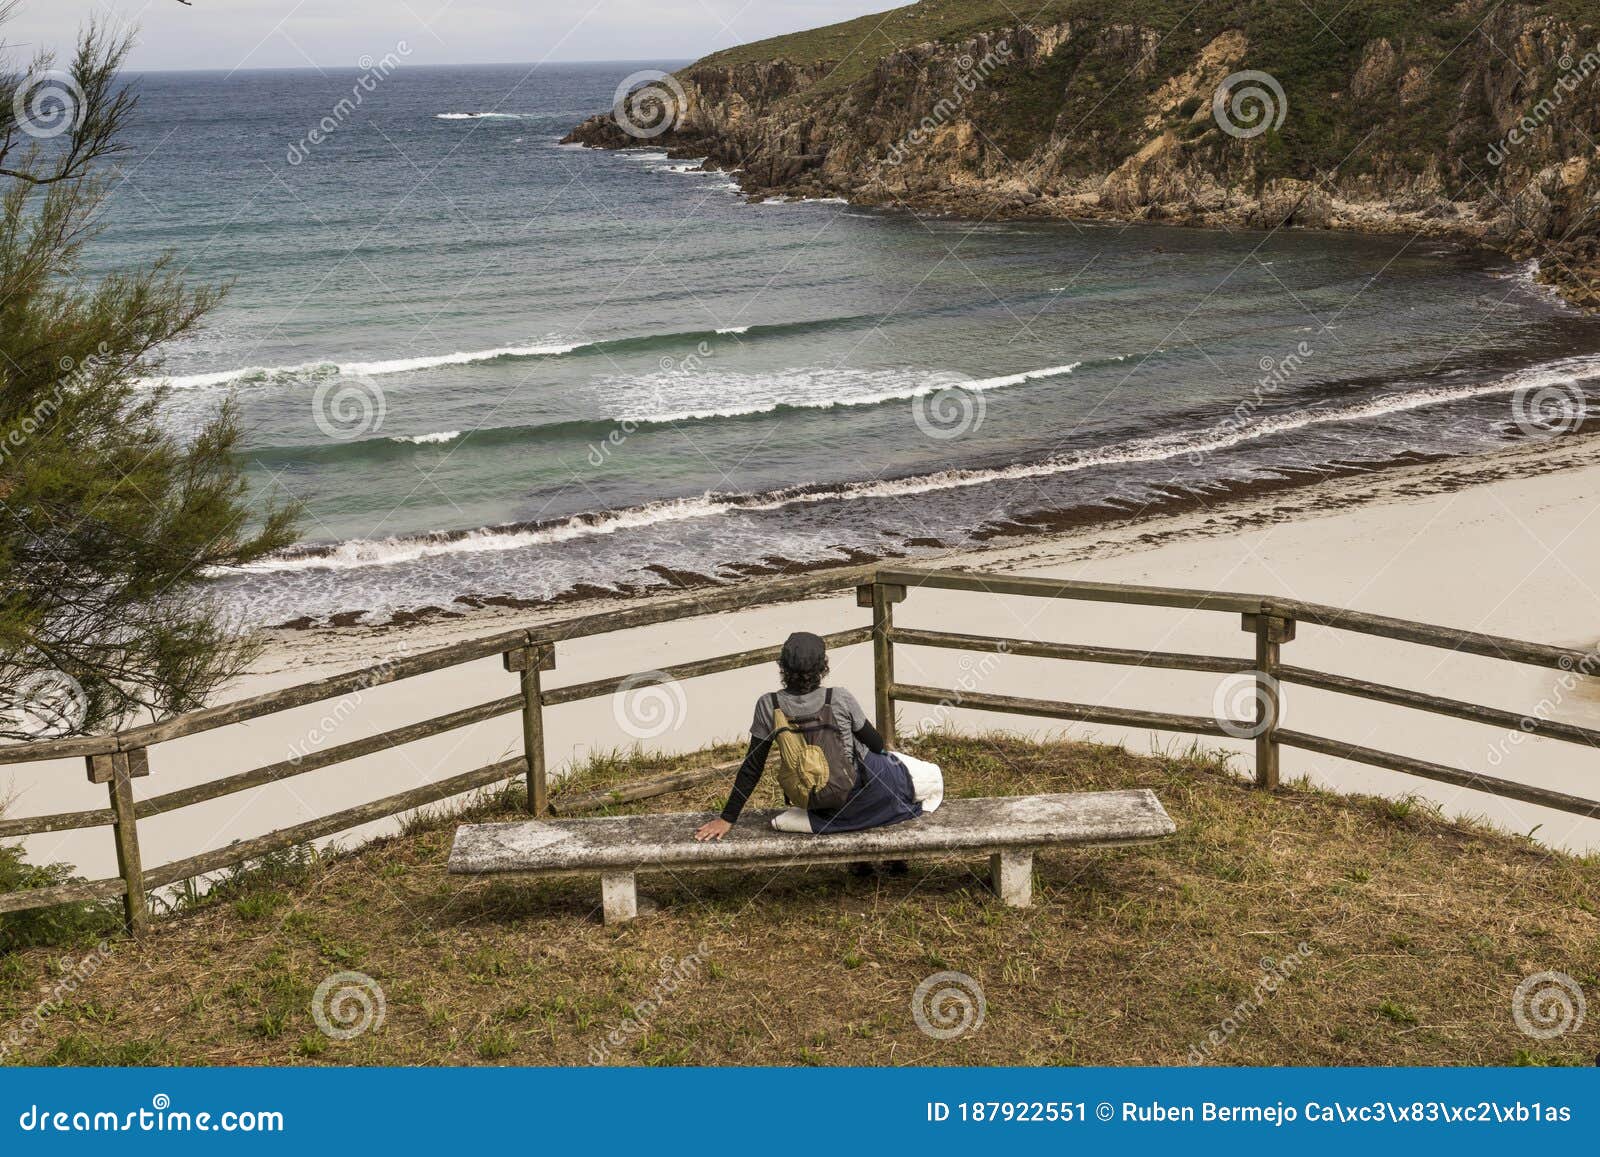 chica senderista descansa en un banco y disfruta de la vista panoramica de la playa de esteiro en la ruta de los faros